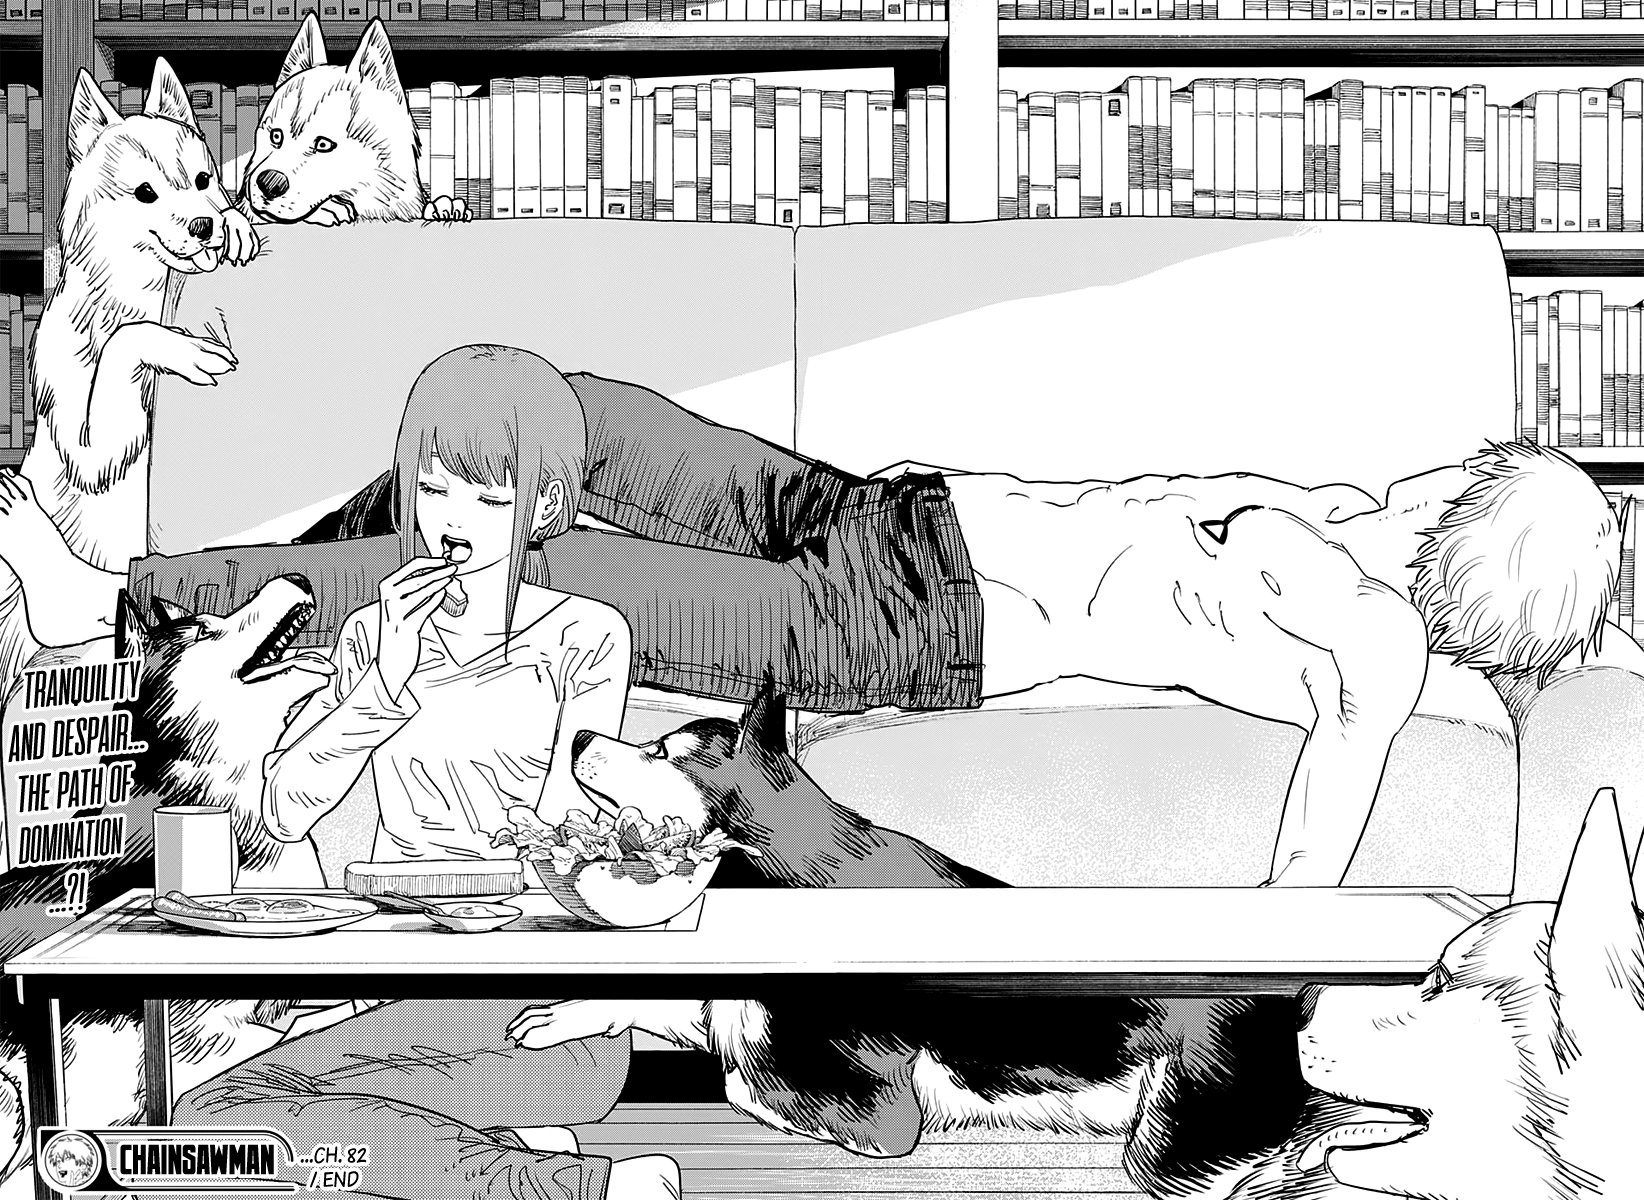 Chainsaw Man Manga Chapter - 82 - image 19